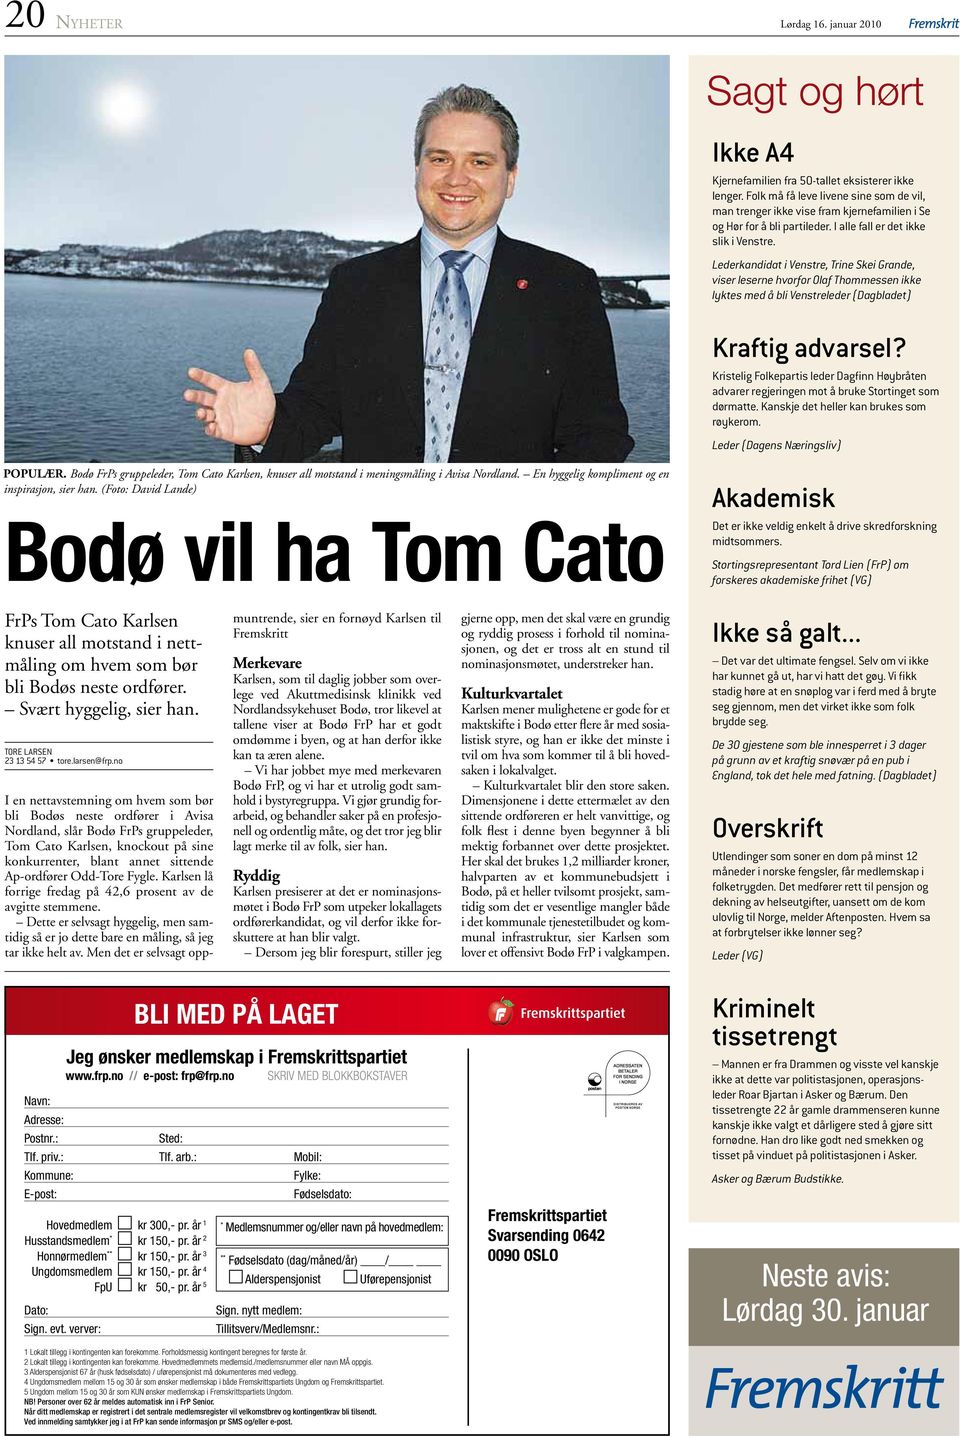 Lederkandidat i Venstre, Trine Skei Grande, viser leserne hvorfor Olaf Thommessen ikke lyktes med å bli Venstreleder (Dagbladet) Kraftig advarsel?